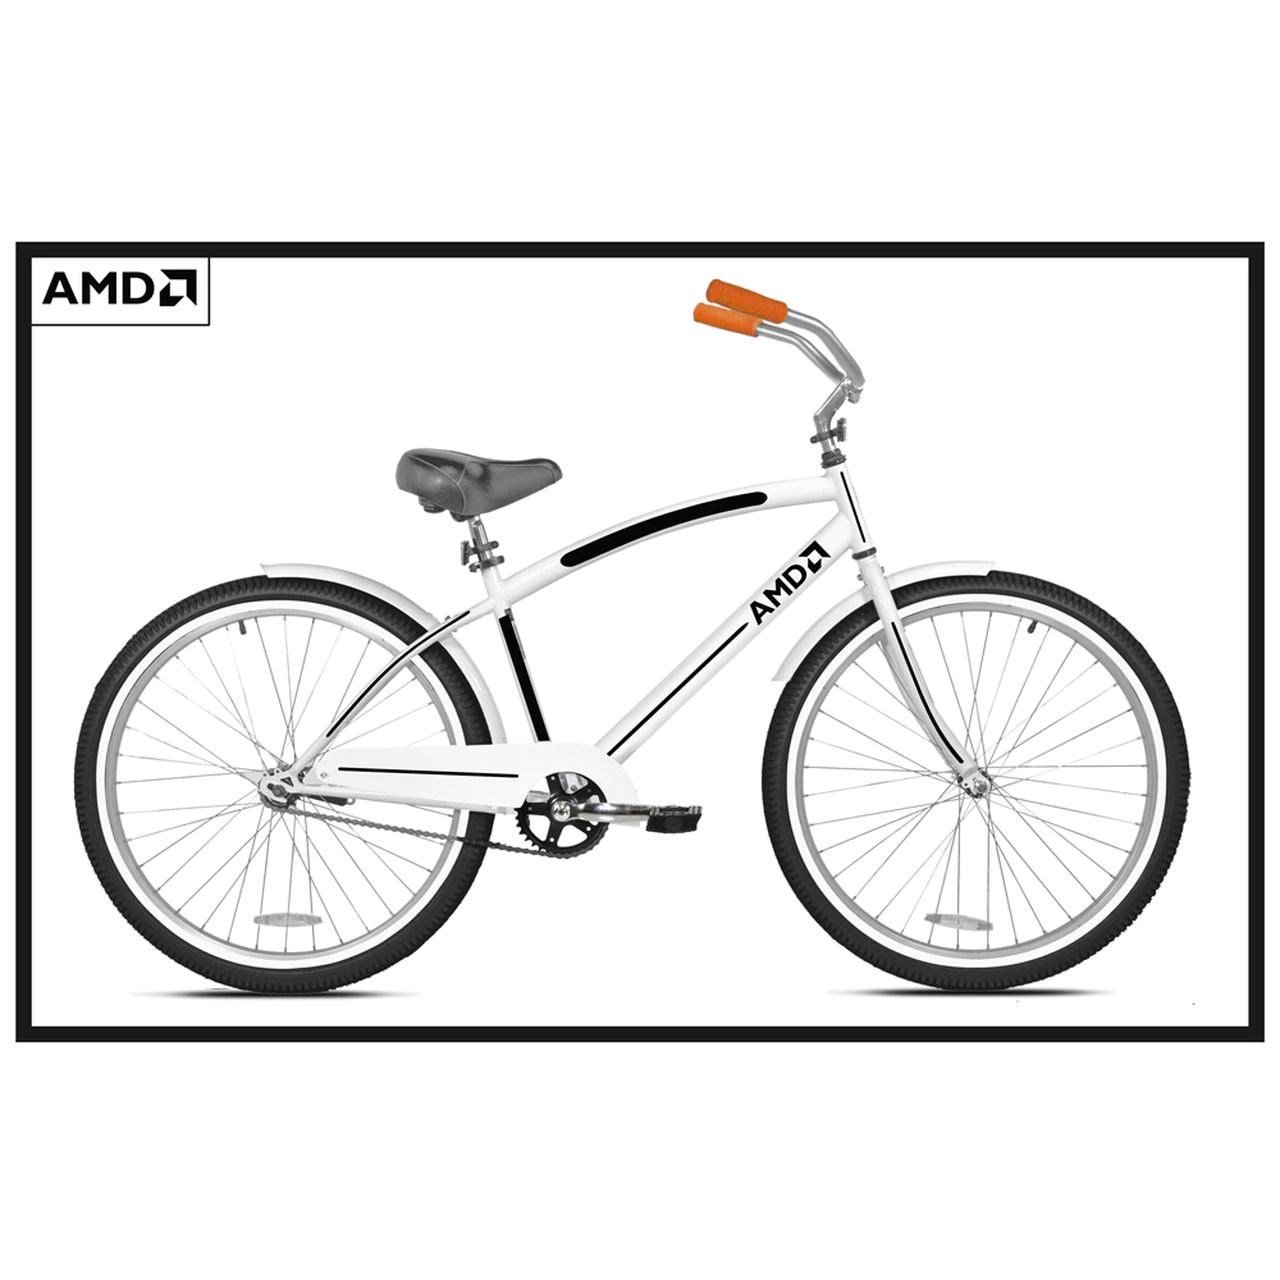 AMD bisikletler satışa sunuldu